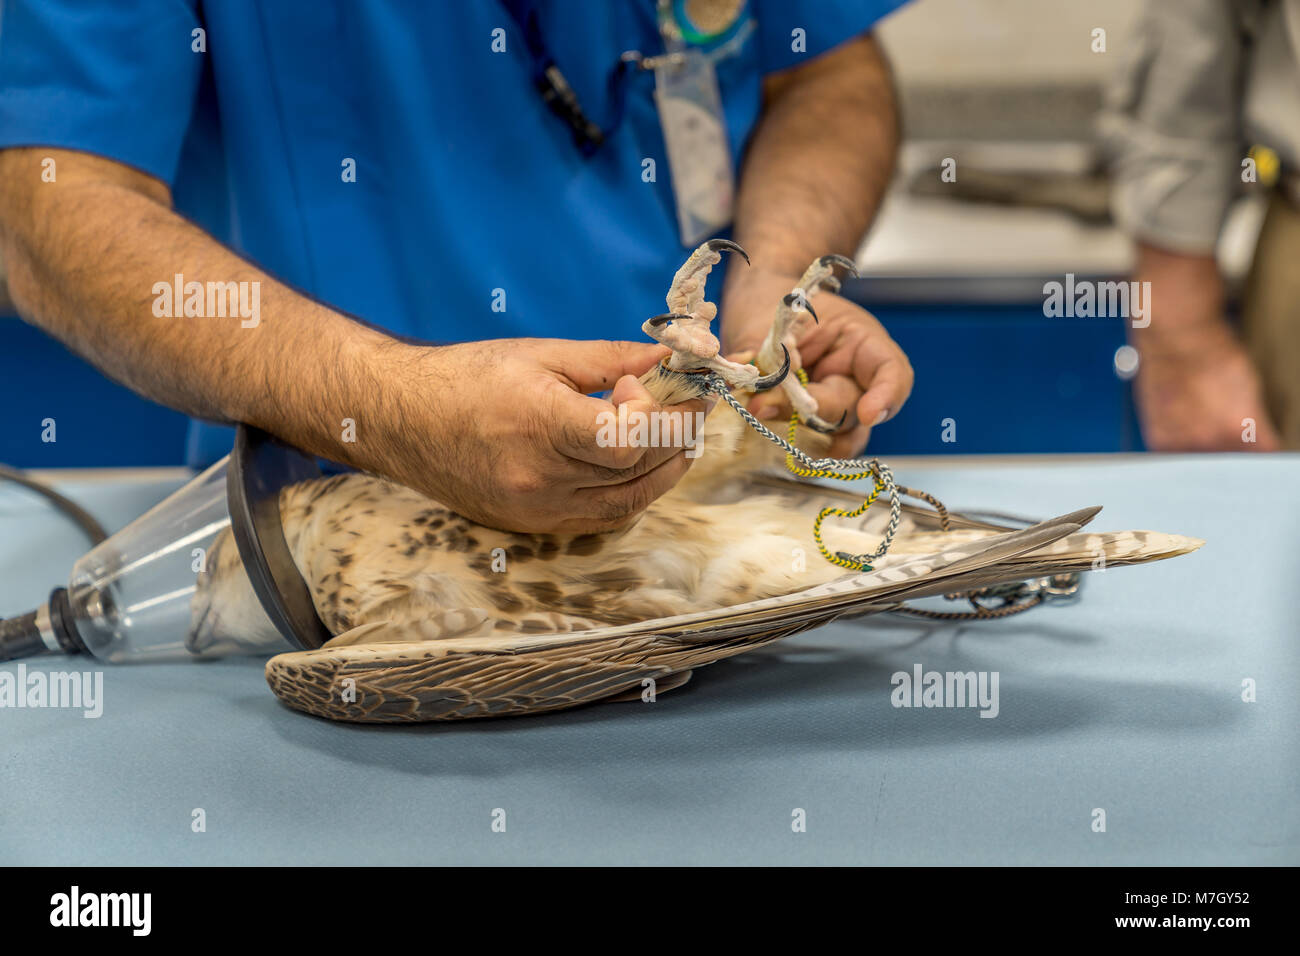 Abu Dhabi, UAE - Jan 11, 2018. Un pèlerin sur une table de laboratoire en cours d'examen après l'anesthésie. Banque D'Images